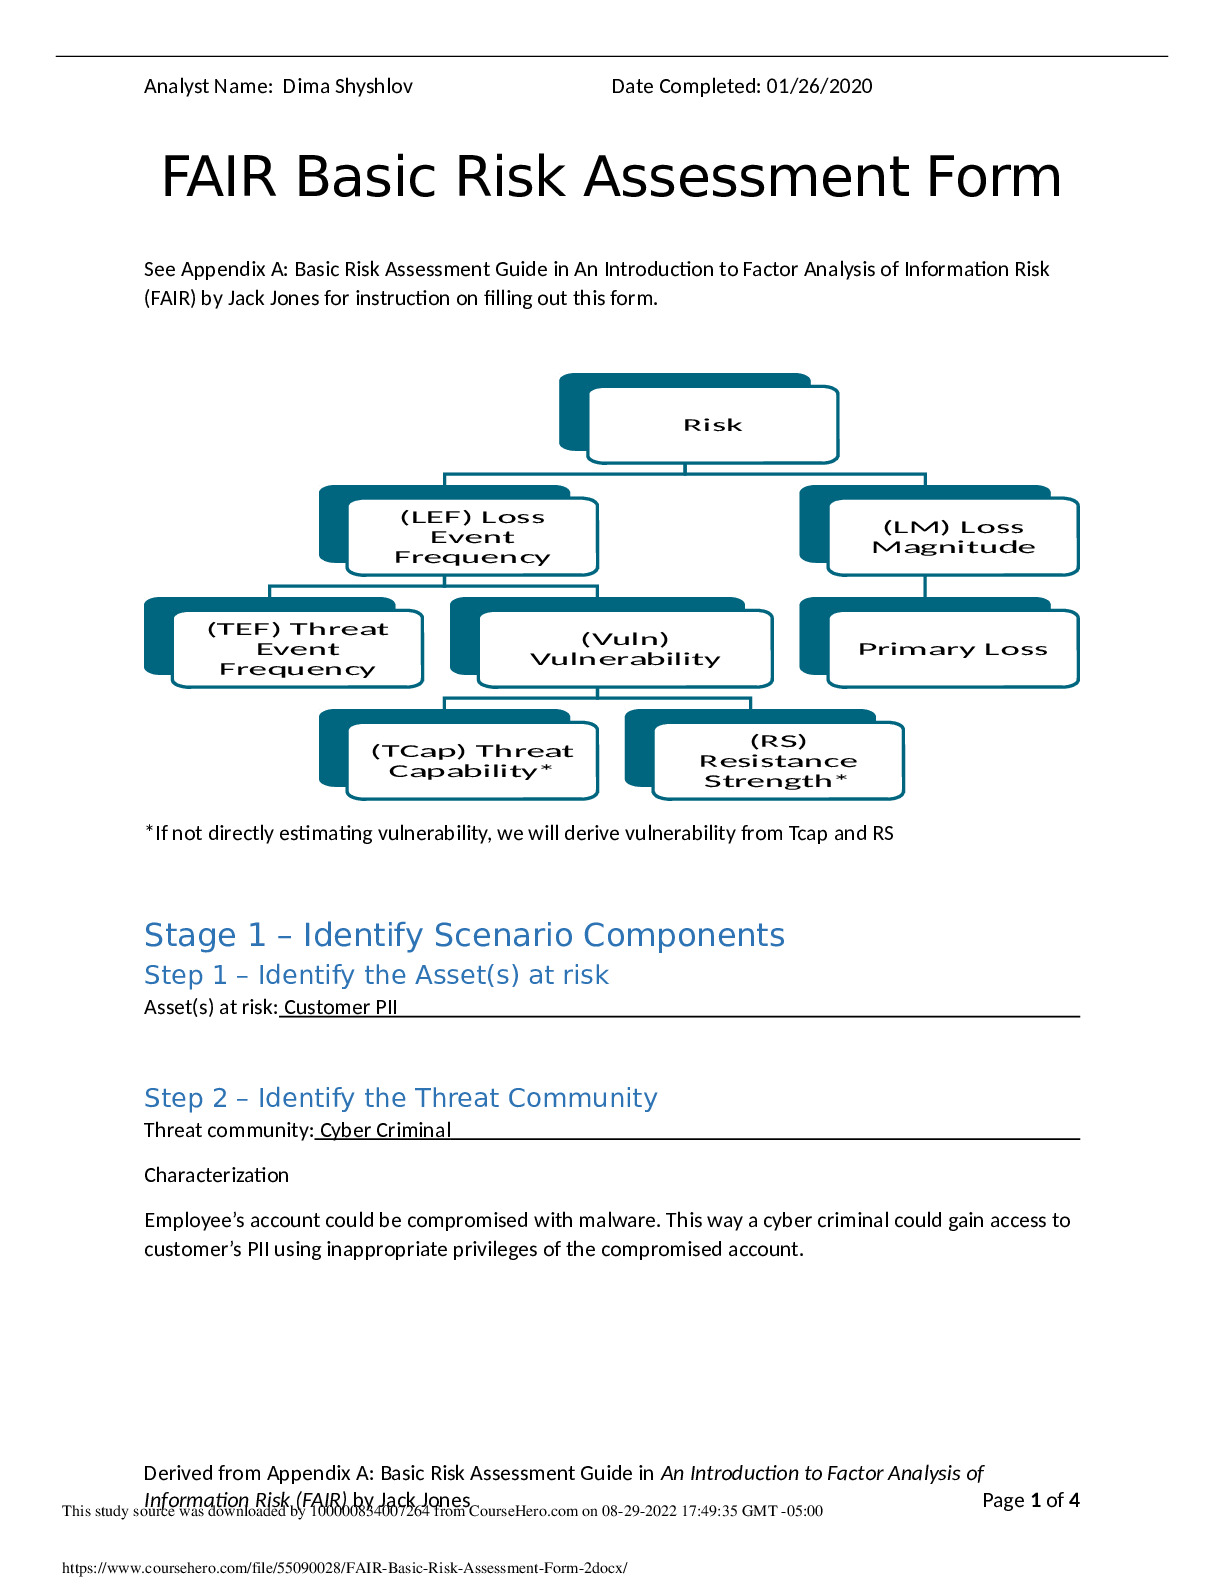 FAIR_Basic_Risk_Assessment_Form_2.docx